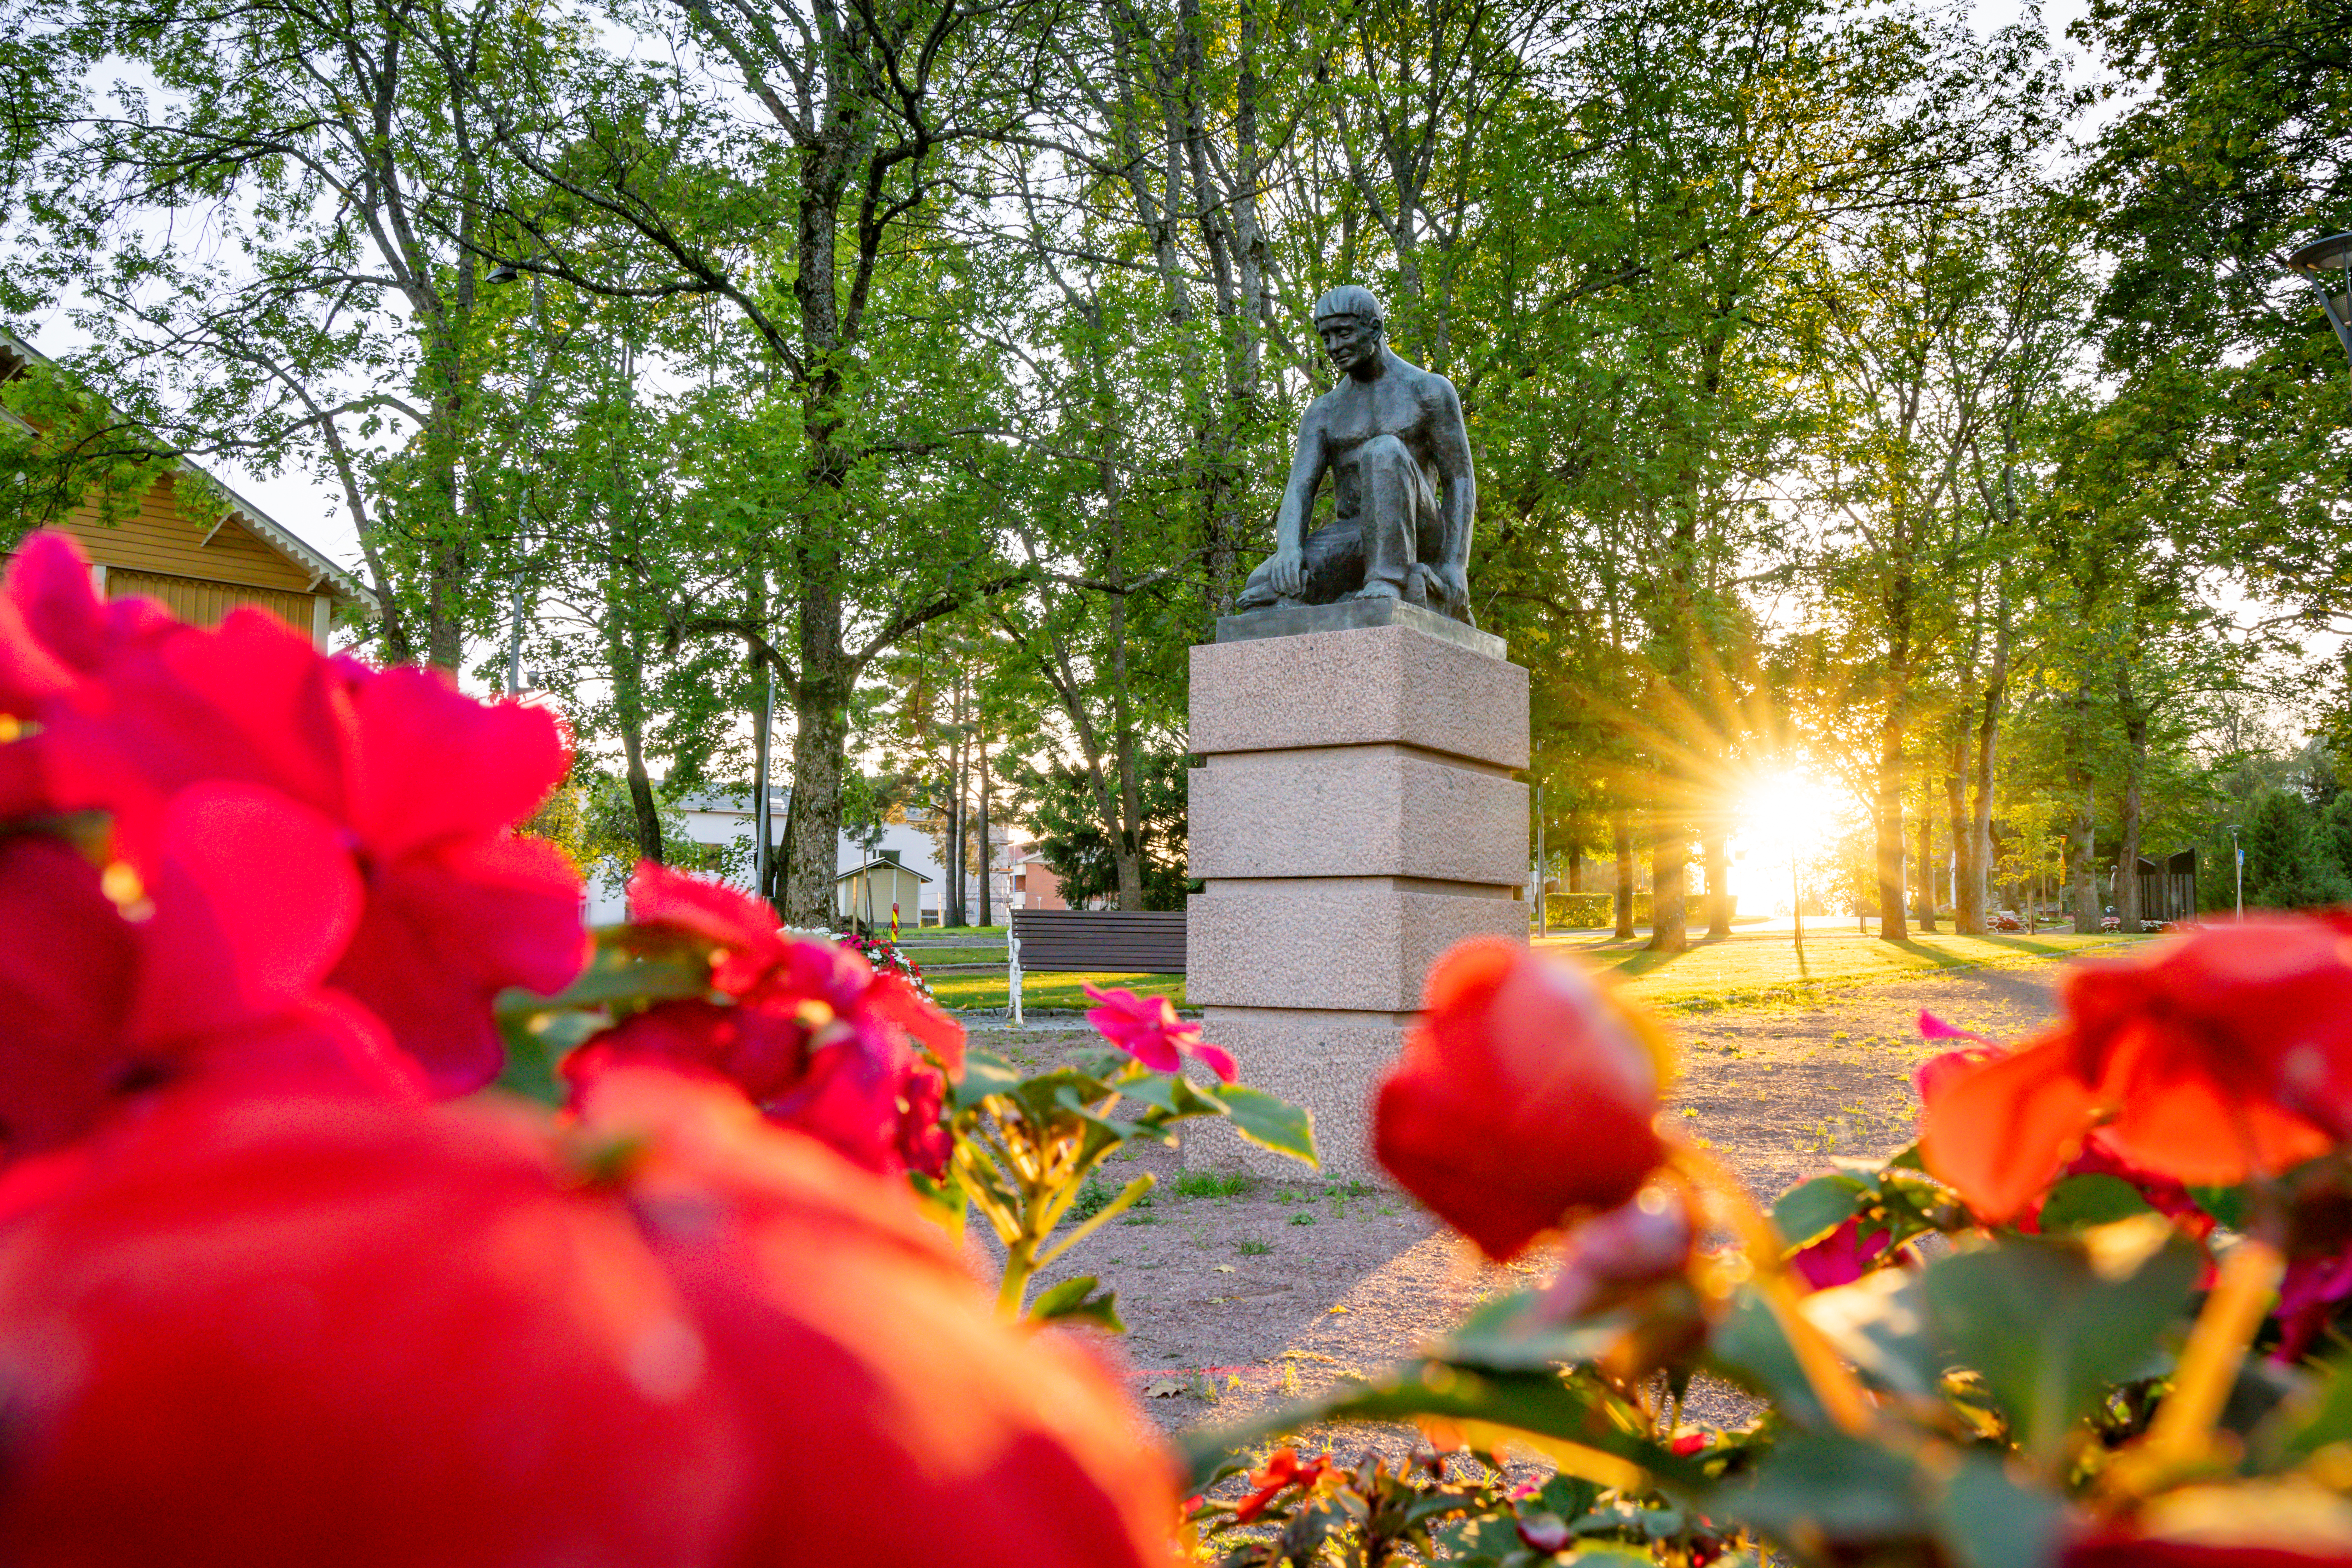 Huittislaisen kuvanveistäjän Lauri Lepistön veistos Henki ja Aine on patsas yhden polven varaan laskeutuneestä miehestä. Patsas sijaitsee Huittisissa torin ja kirkon välissä sijaitsevassa puistossa.